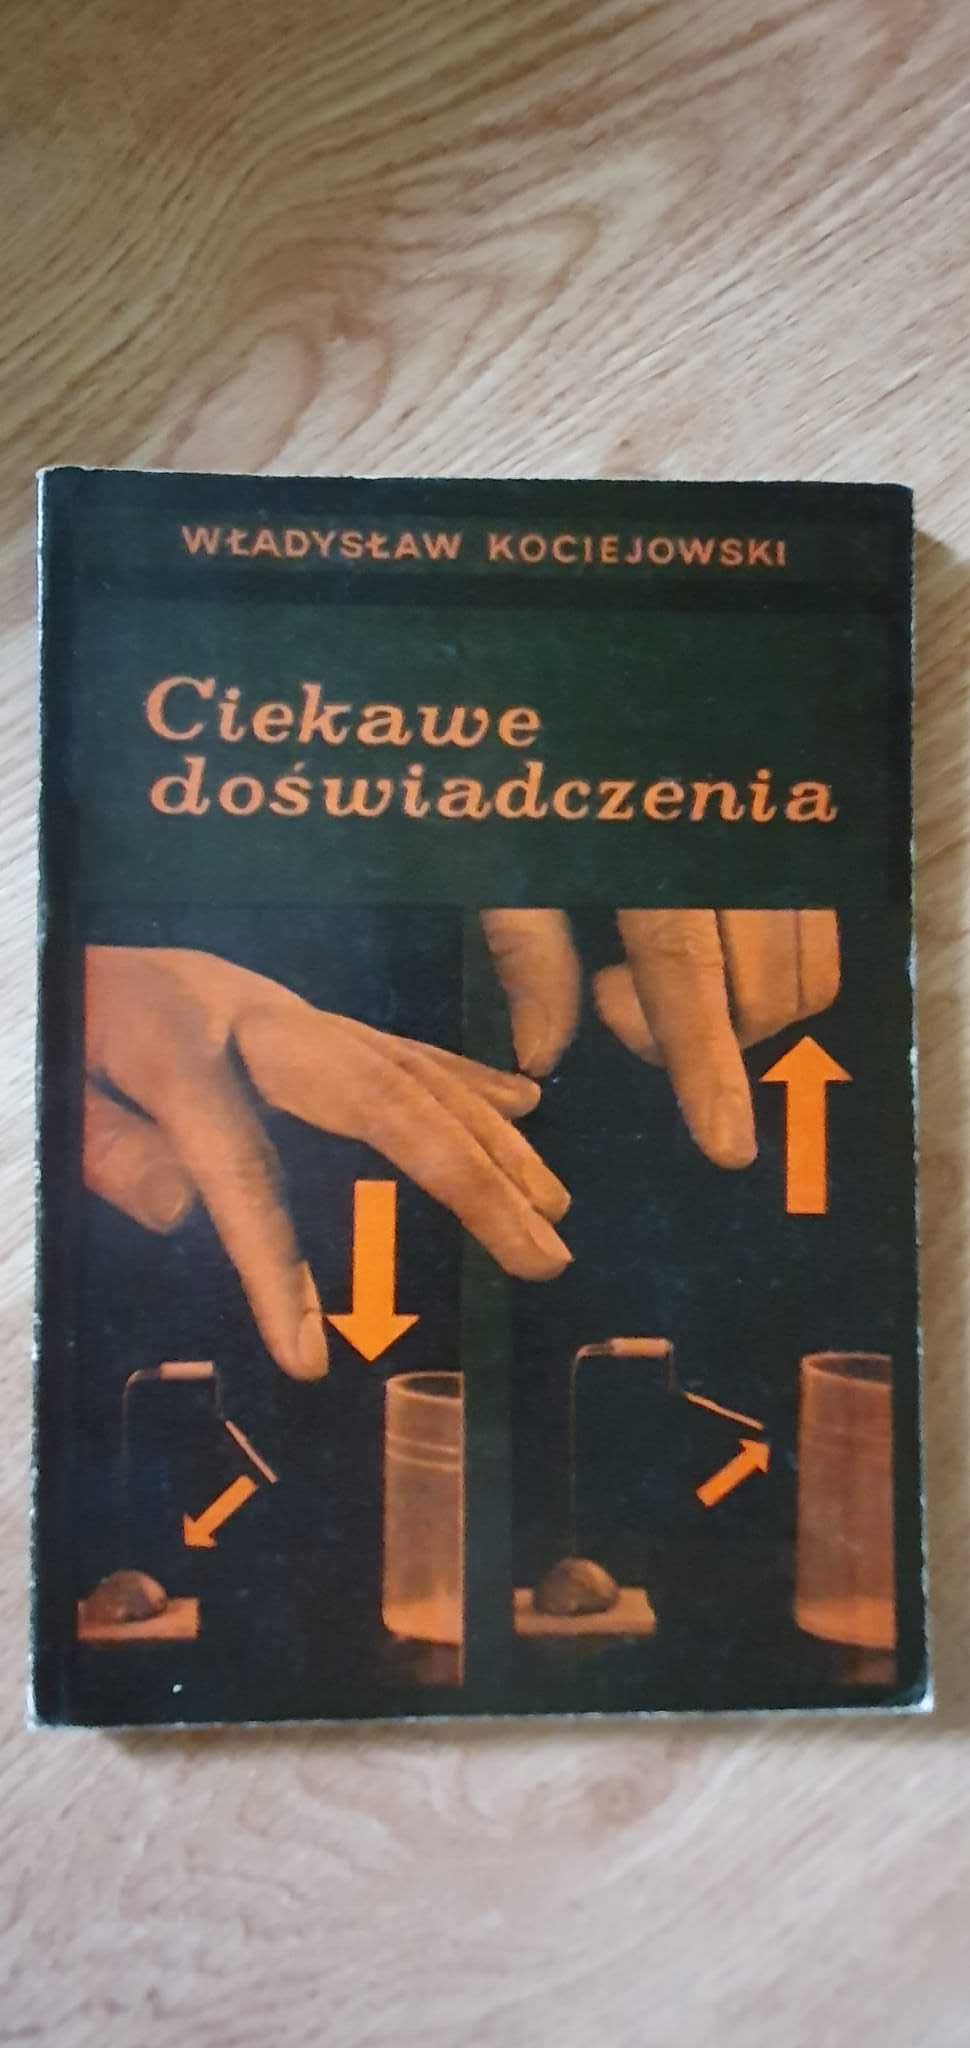 "Ciekawe doświadczenia" - Władysław Kociejowski